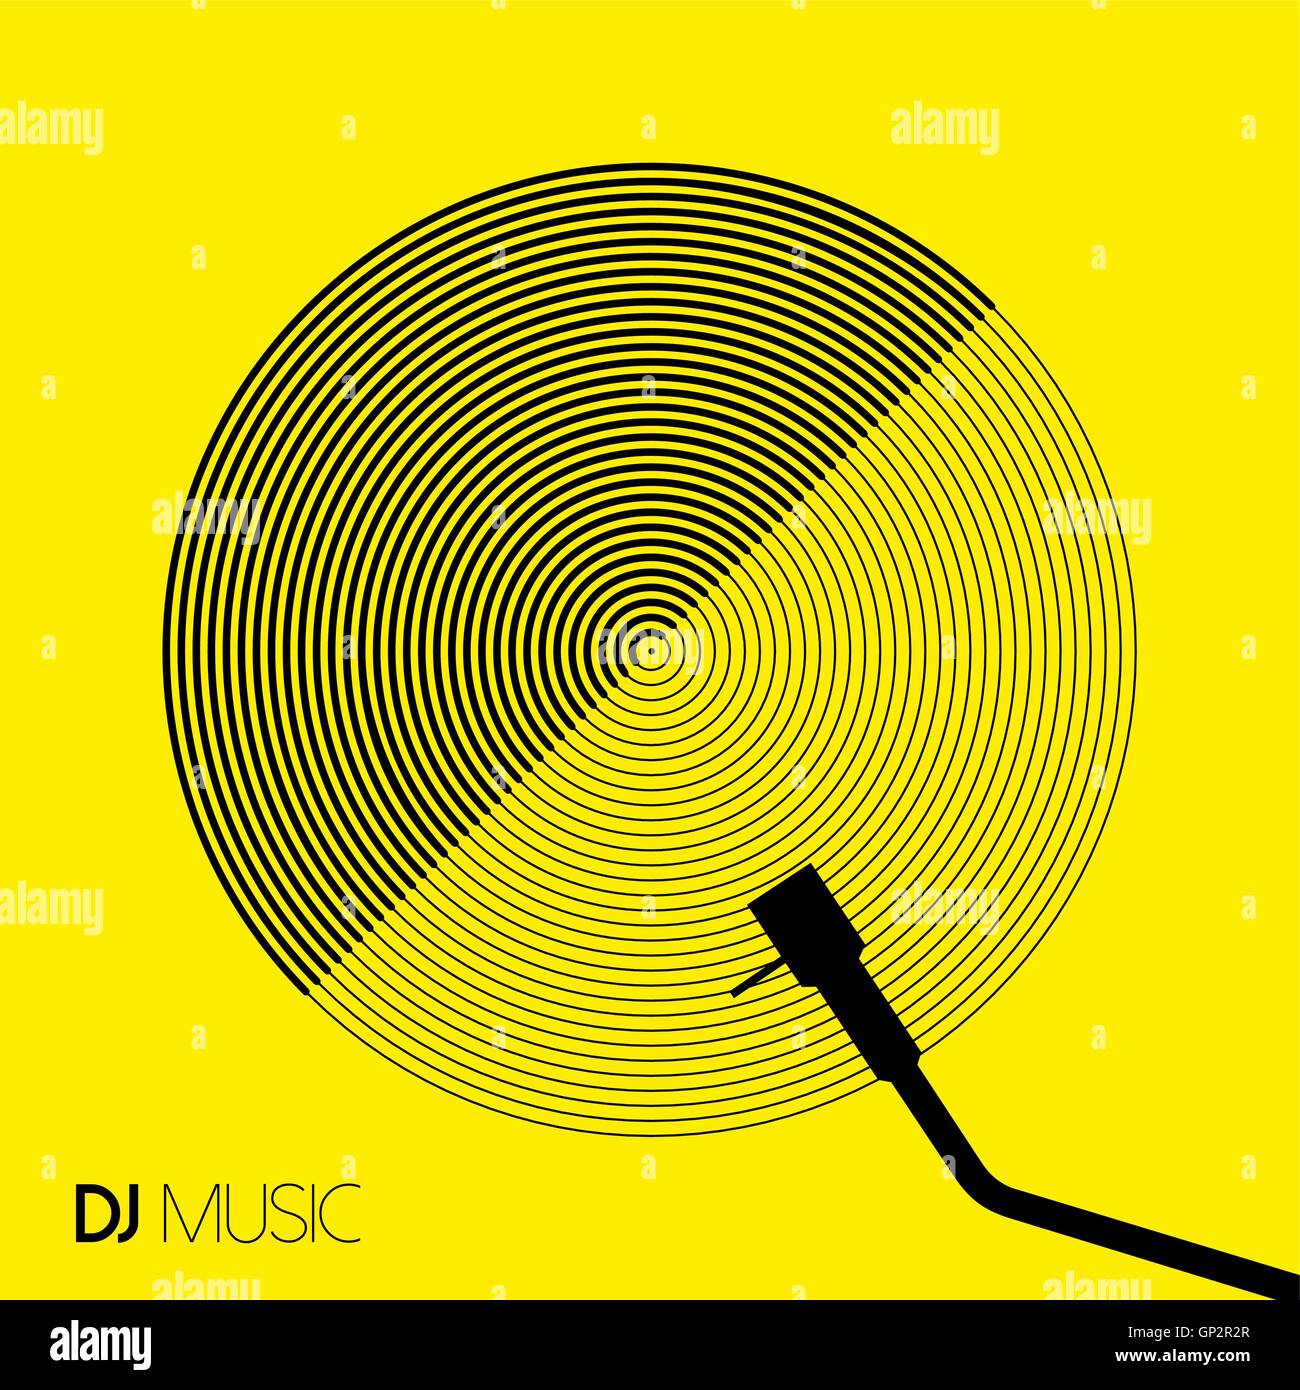 DJ Musik in geometrische Kunststil mit modernen Vinyl Record Design Konzept. EPS10 Vektor. Stock Vektor